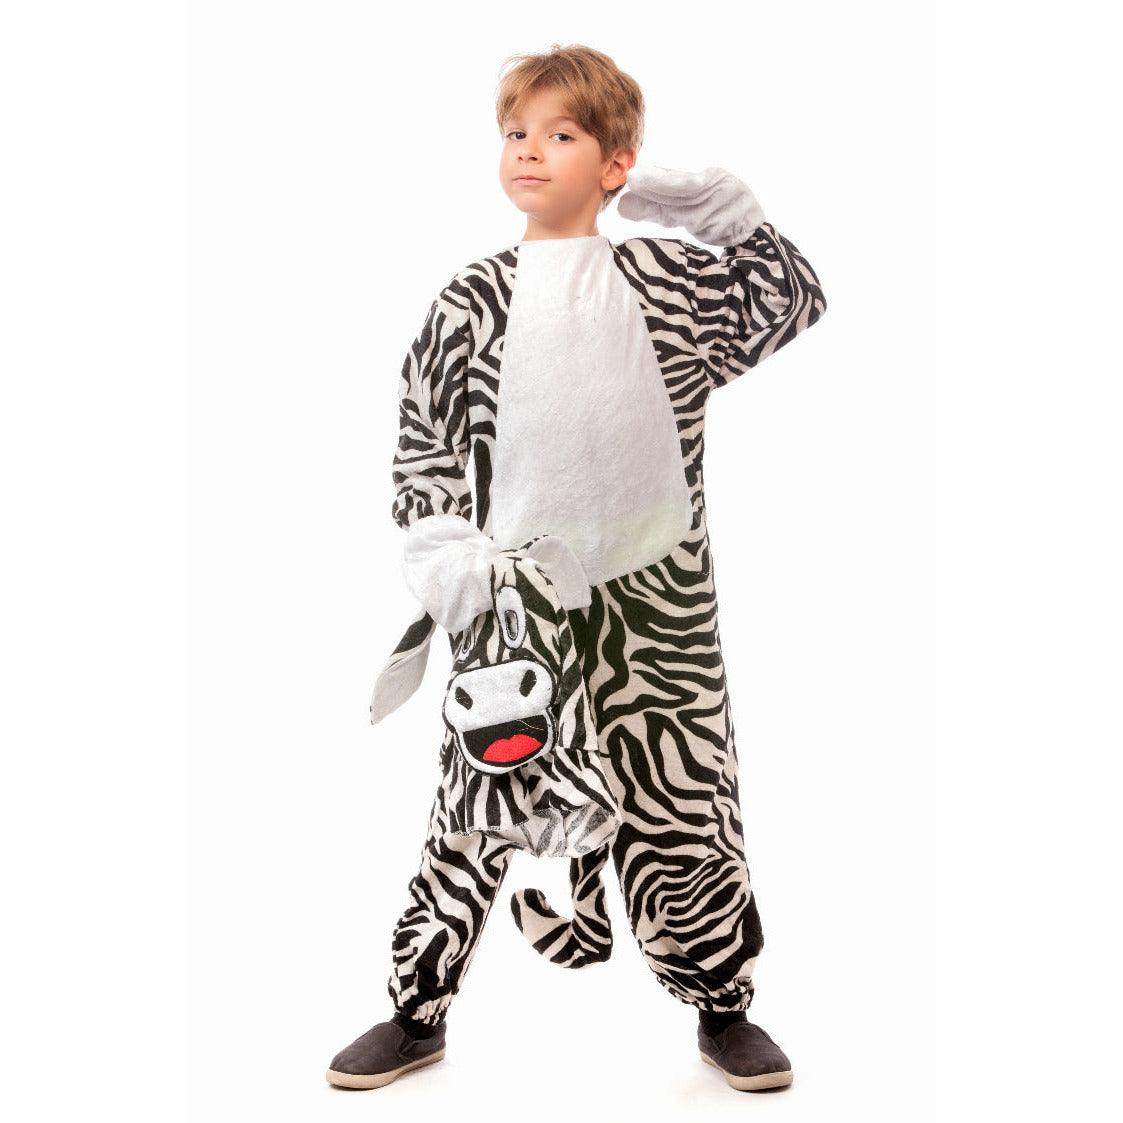 Zebra Costume - Ourkids - M&A